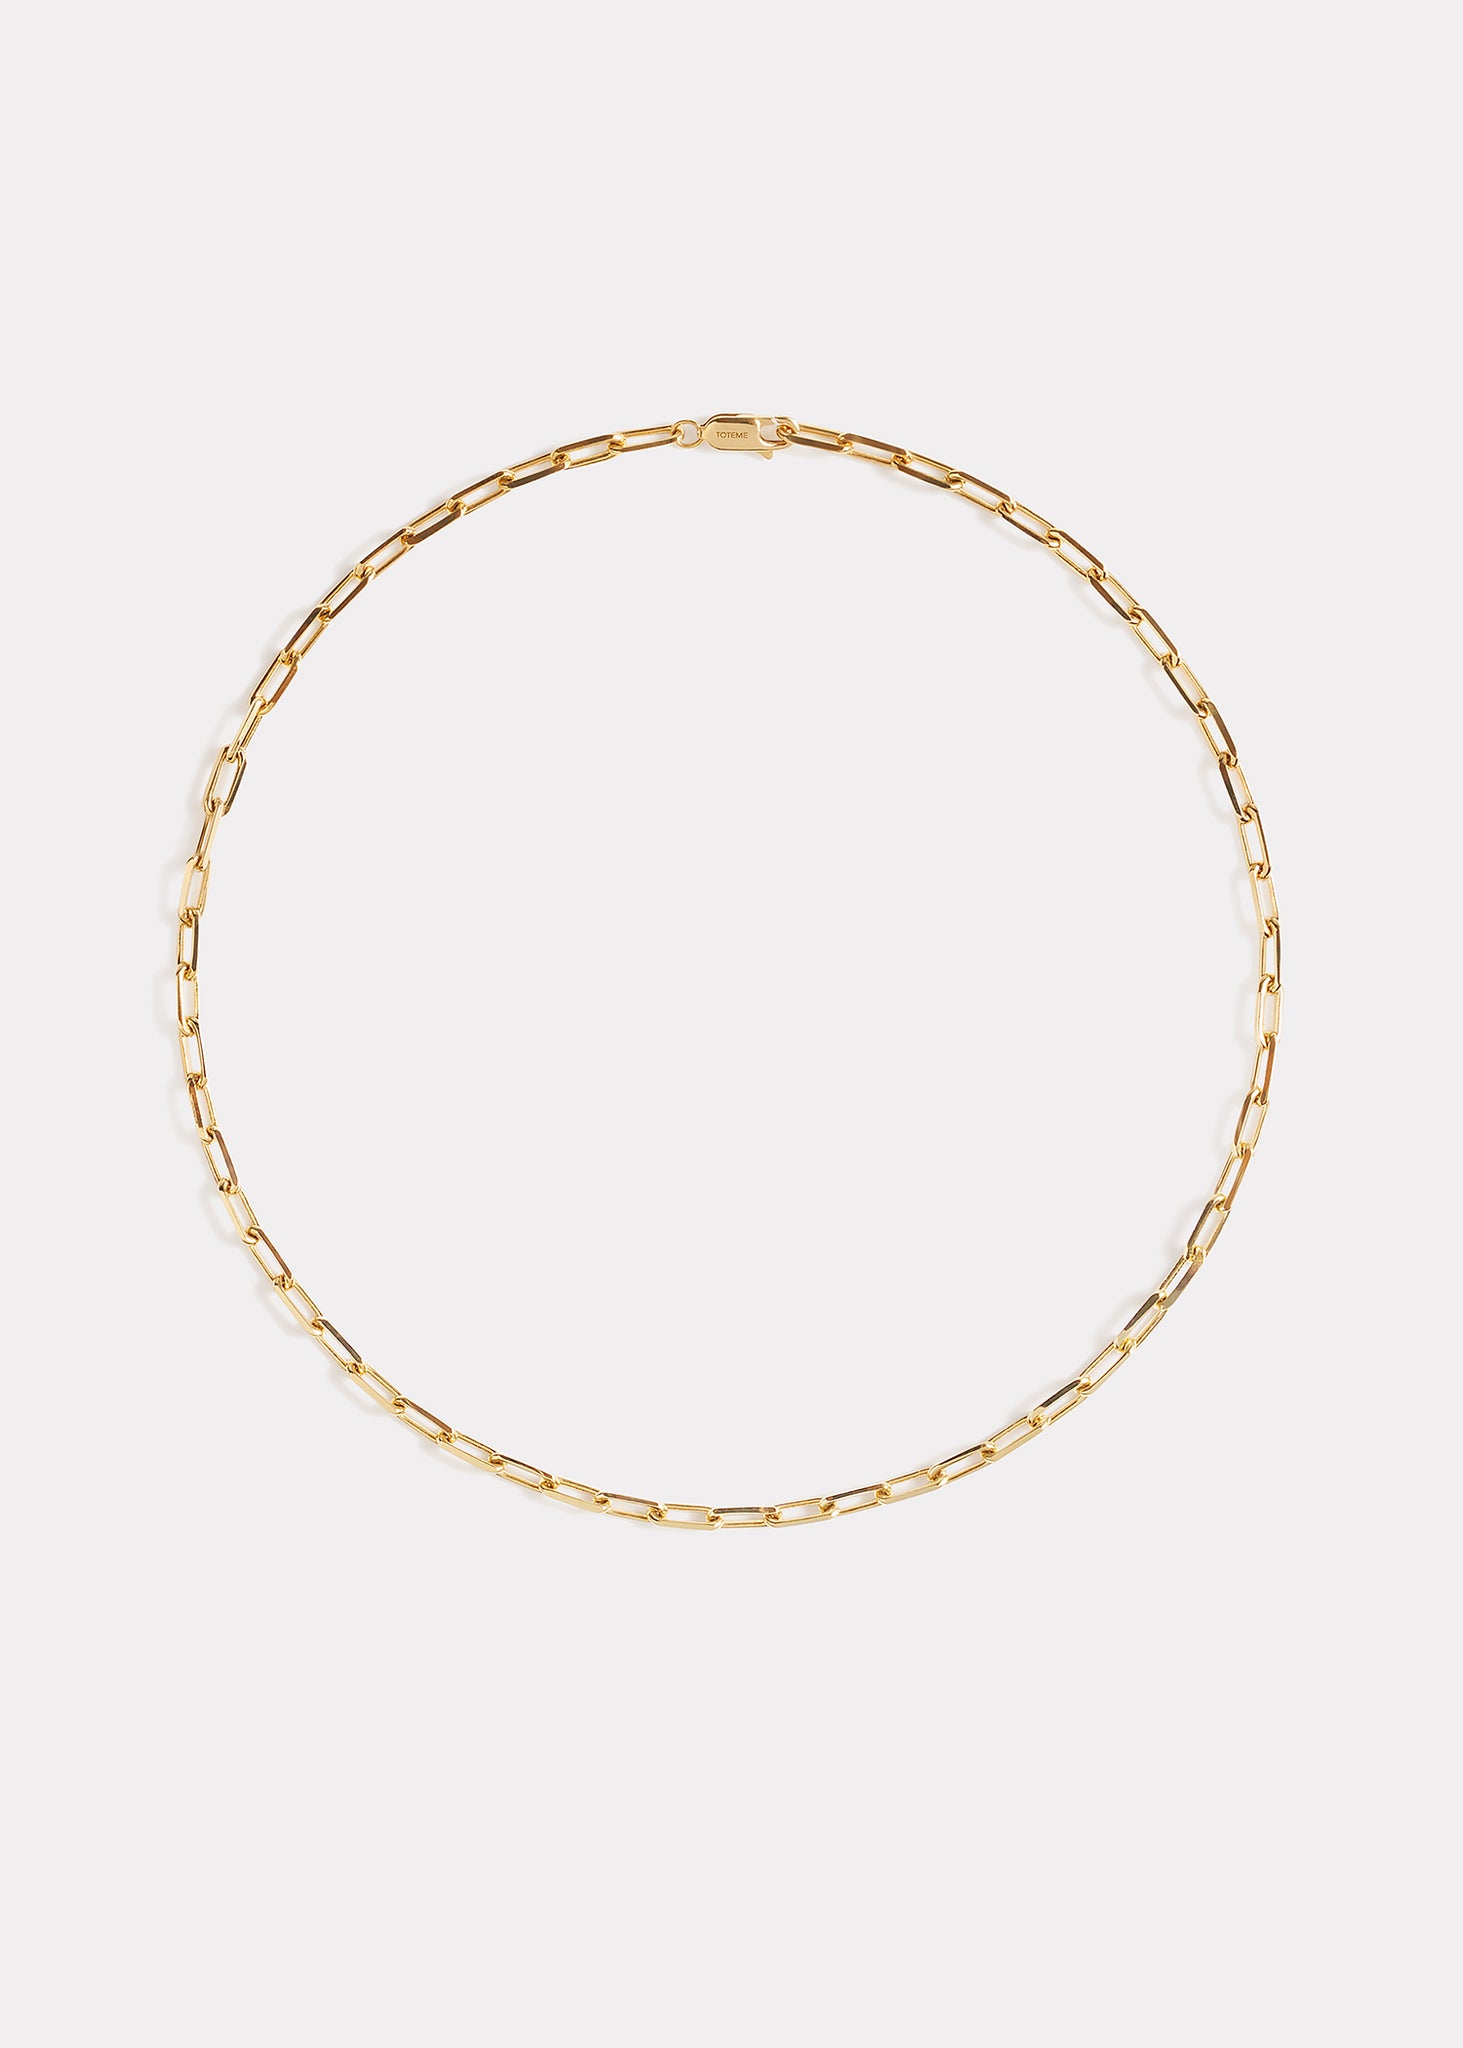 Crew-neck chain 18kt gold